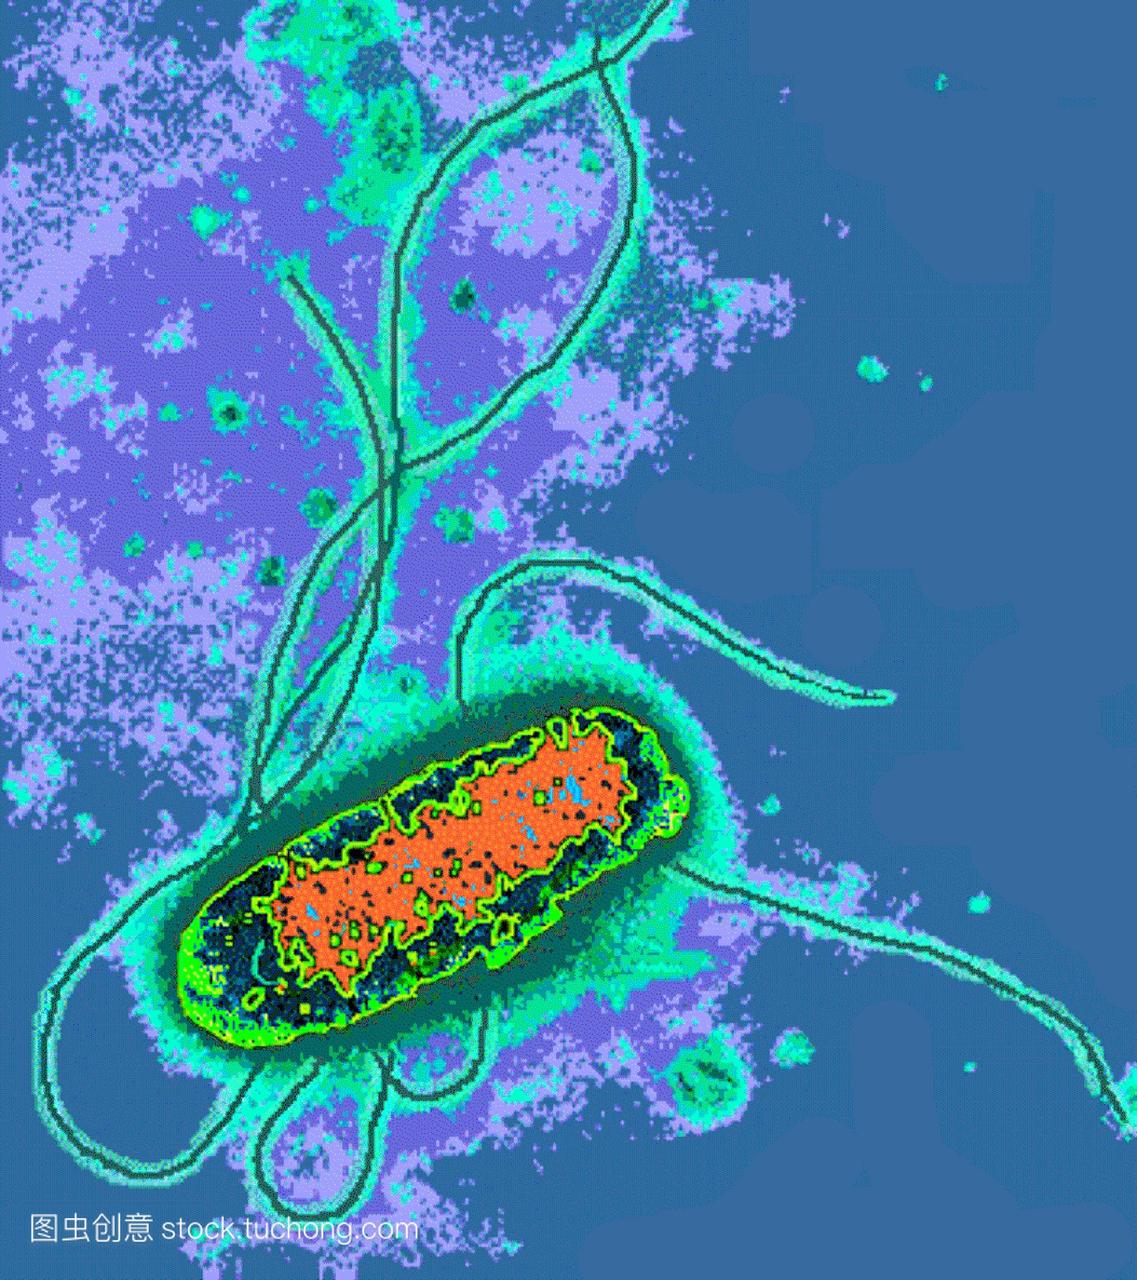 大肠杆菌。彩色透射电子显微镜tem通过大肠杆菌。大肠杆菌是革兰阴性杆菌杆状菌。长长的鞭毛使细菌移动。大肠杆菌是人类肠道的正常居民。然而，在某些情况下，它的数量可能会增加引起感染。它会引起“旅行者腹泻”和尿路感染，如膀胱炎。大肠杆菌被广泛应用于遗传研究和基因工程。负染色。放大未知。